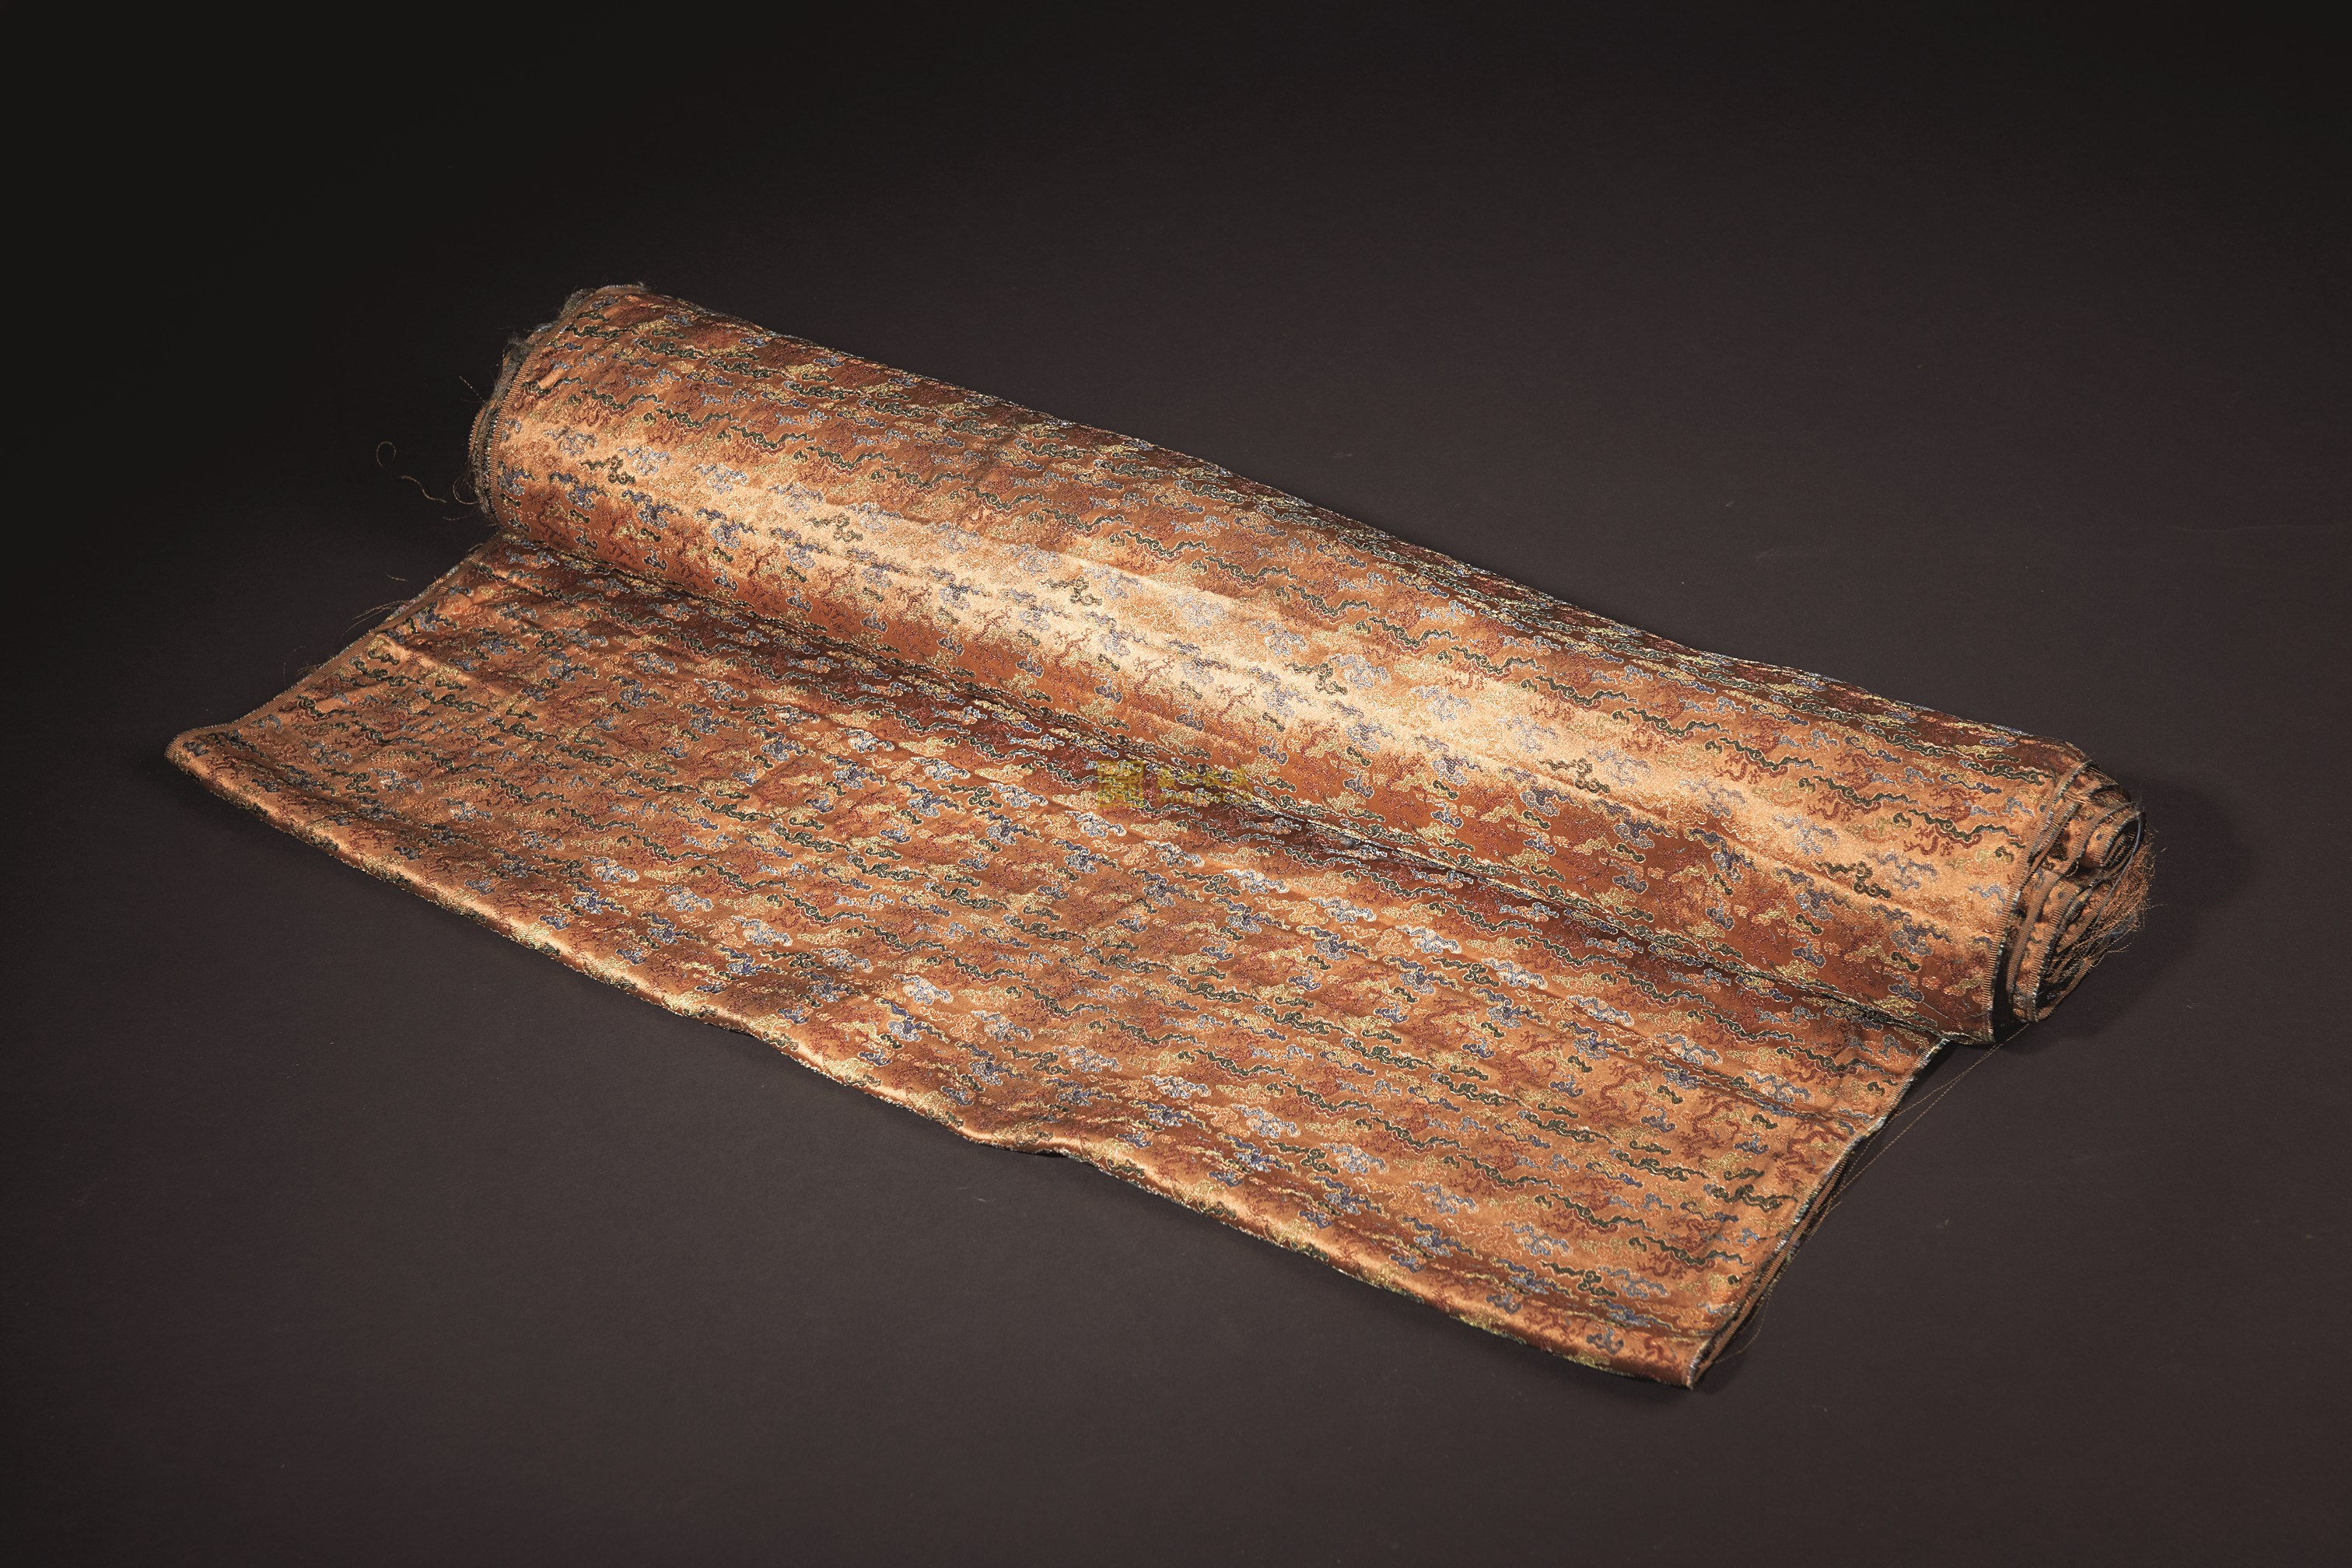 絲綢(用蠶絲或人造絲純織或交織而成的織品總稱)